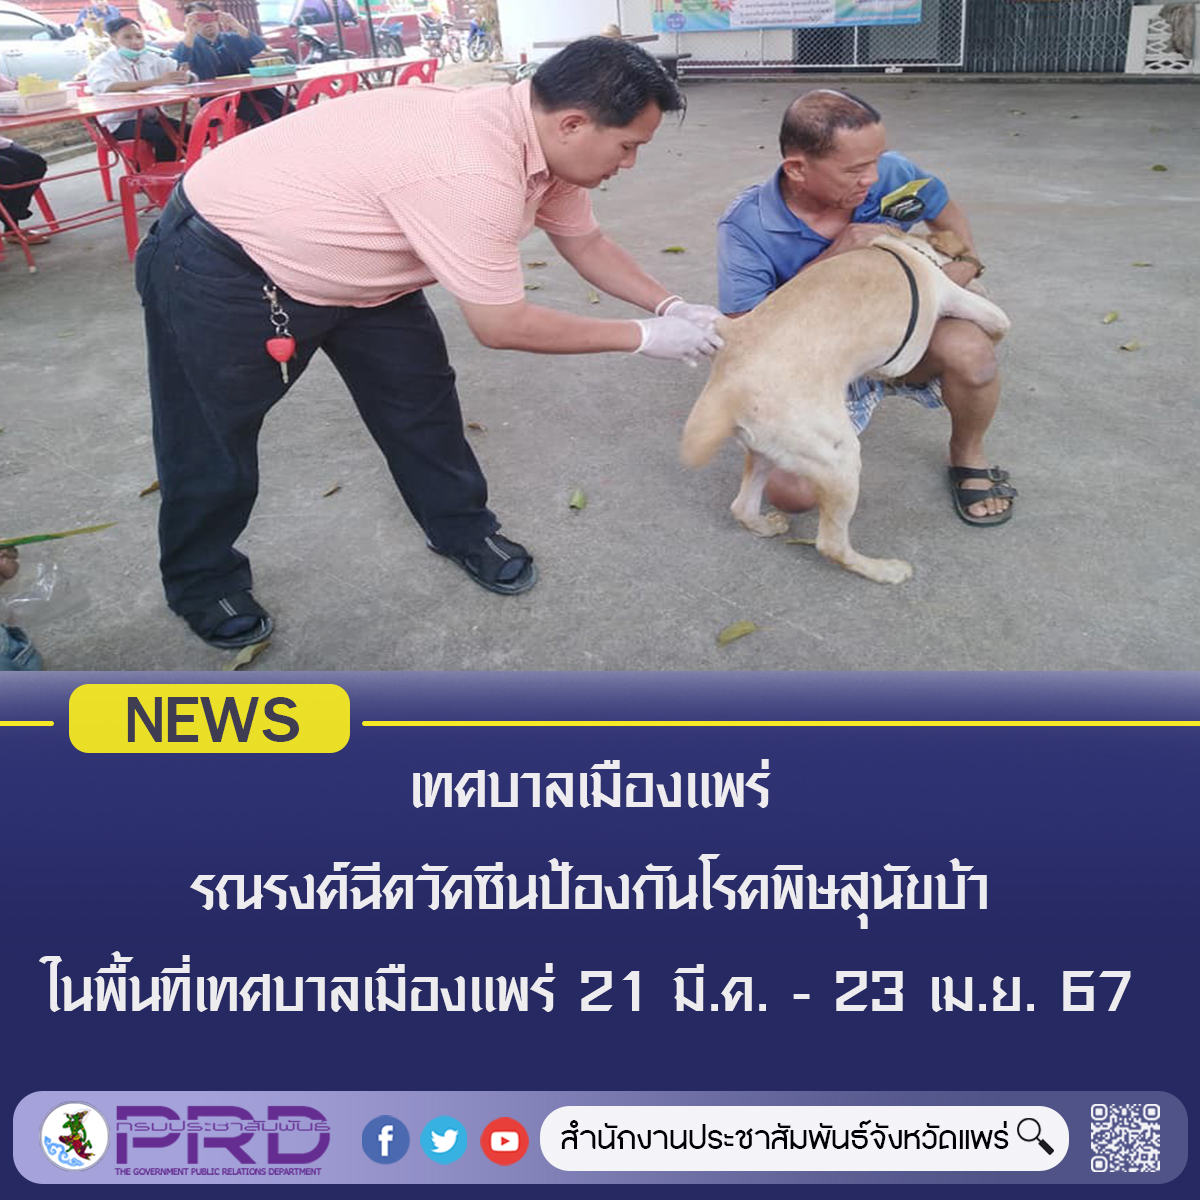 เทศบาลเมืองแพร่ จัดเจ้าหน้าที่ทำการฉีดวัคซีนป้องกันโรคพิษสุนัขบ้า ตามชุมชนต่างๆ ตั้งแต่วันที่ 21 มีนาคม – 23 เมษายน 2567